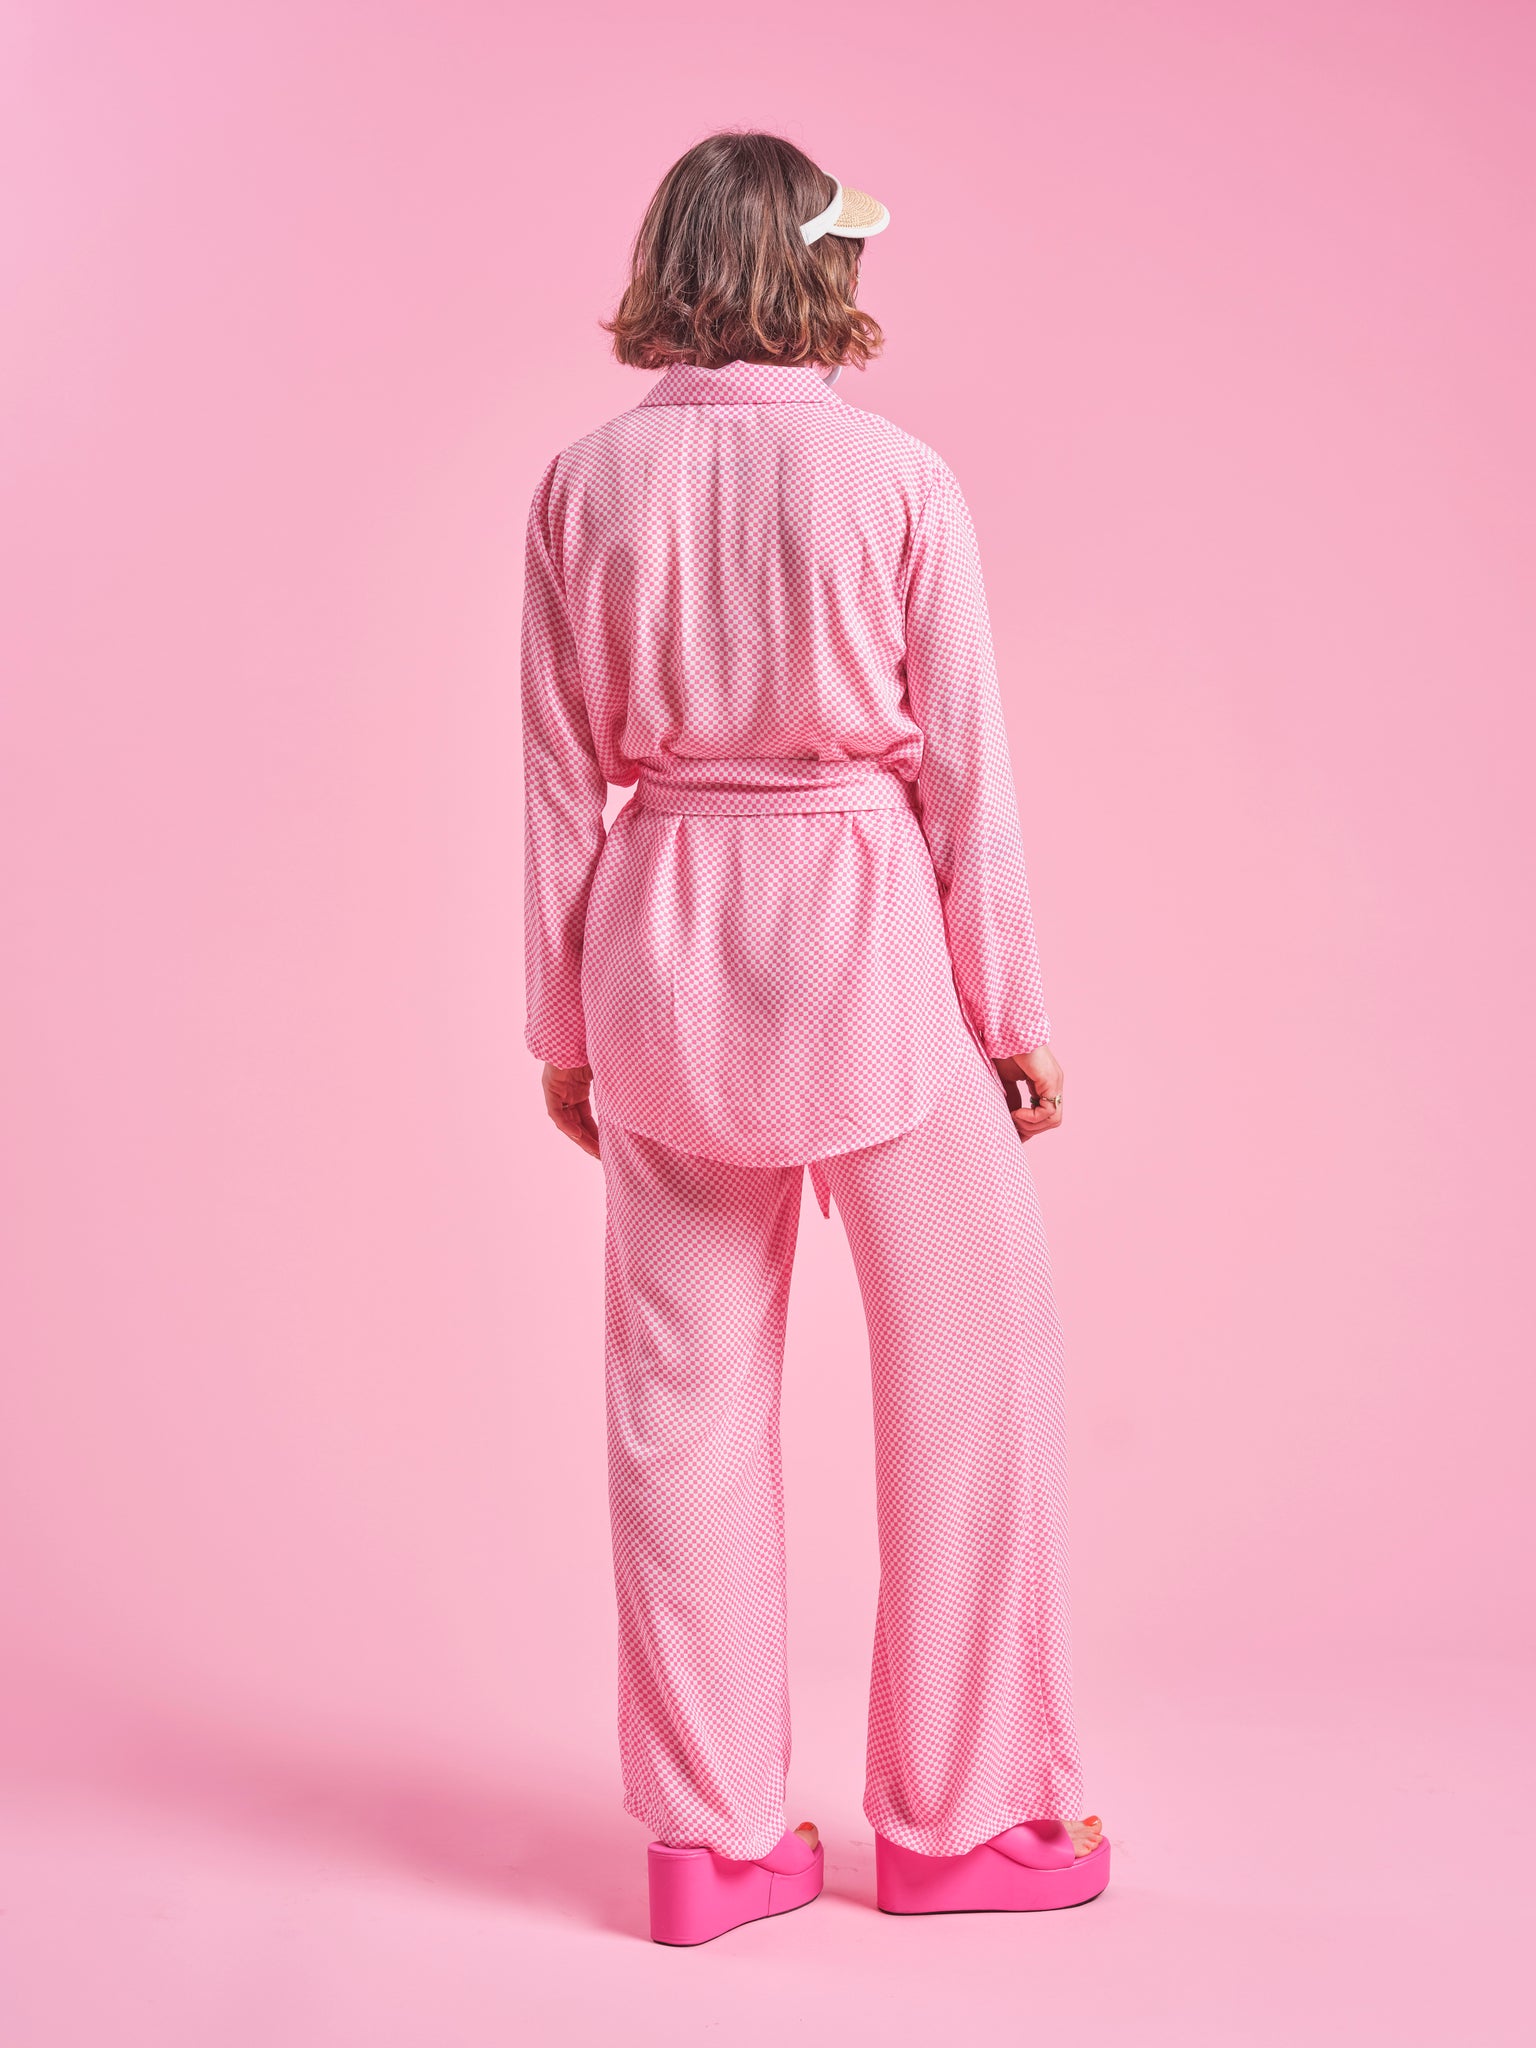 Women's Pink Loungewear